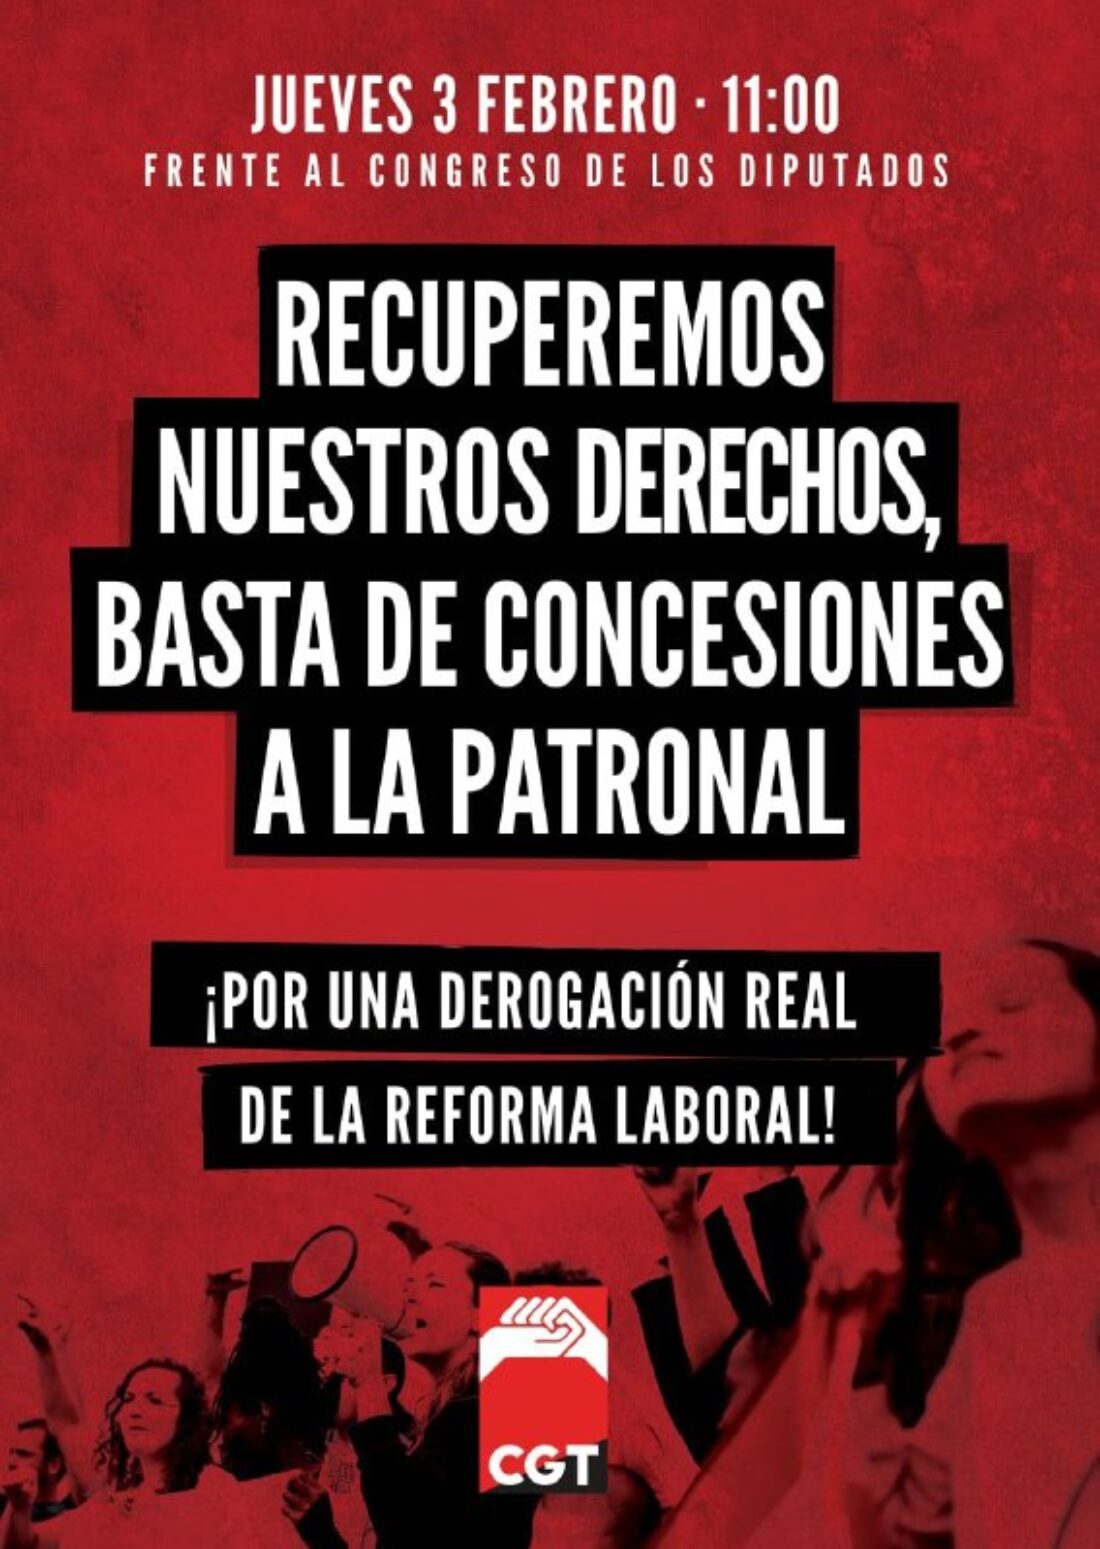 No aceptamos el maquillaje de Reforma Laboral y exigimos la derogación integra de las Reformas Laborales de 2010 y 2012